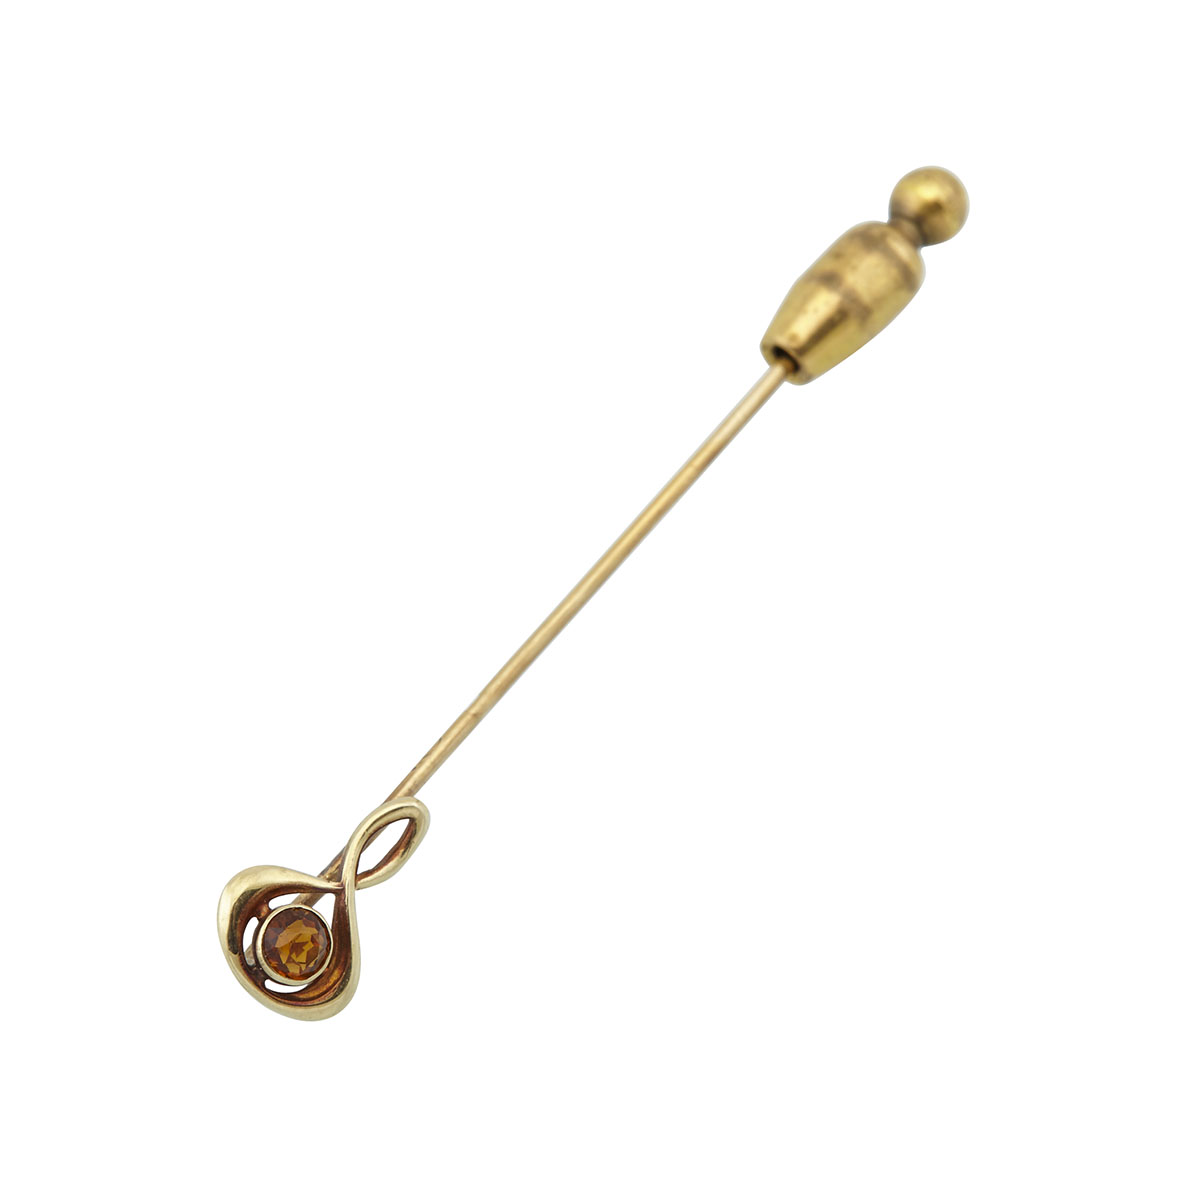 Karl Faberge Russian 14k Yellow Gold Stick Pin